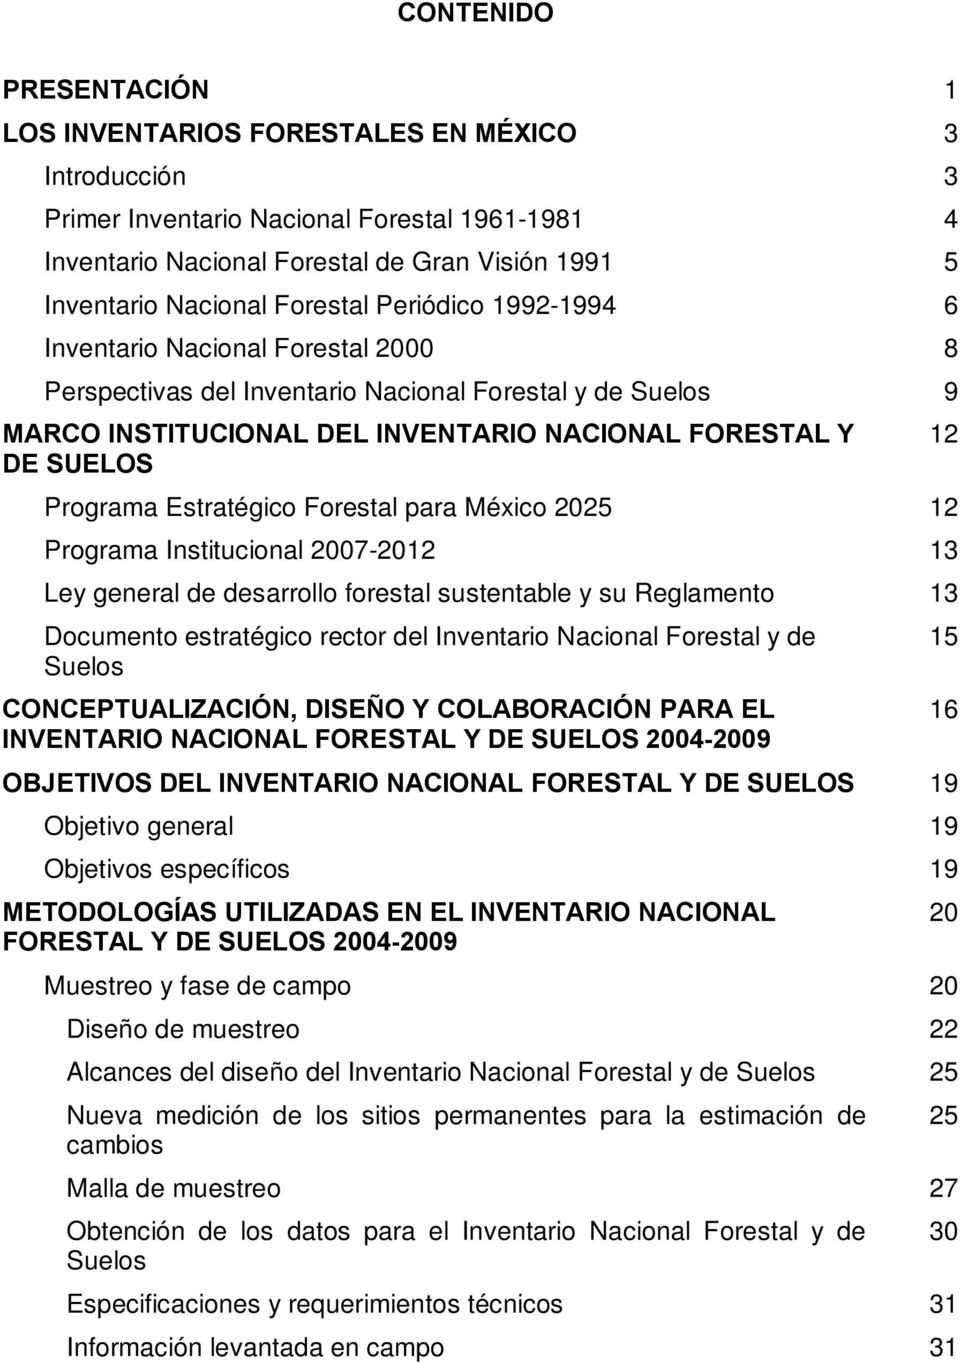 Programa Estratégico Forestal para México 2025 12 Programa Institucional 2007-2012 13 Ley general de desarrollo forestal sustentable y su Reglamento 13 Documento estratégico rector del Inventario